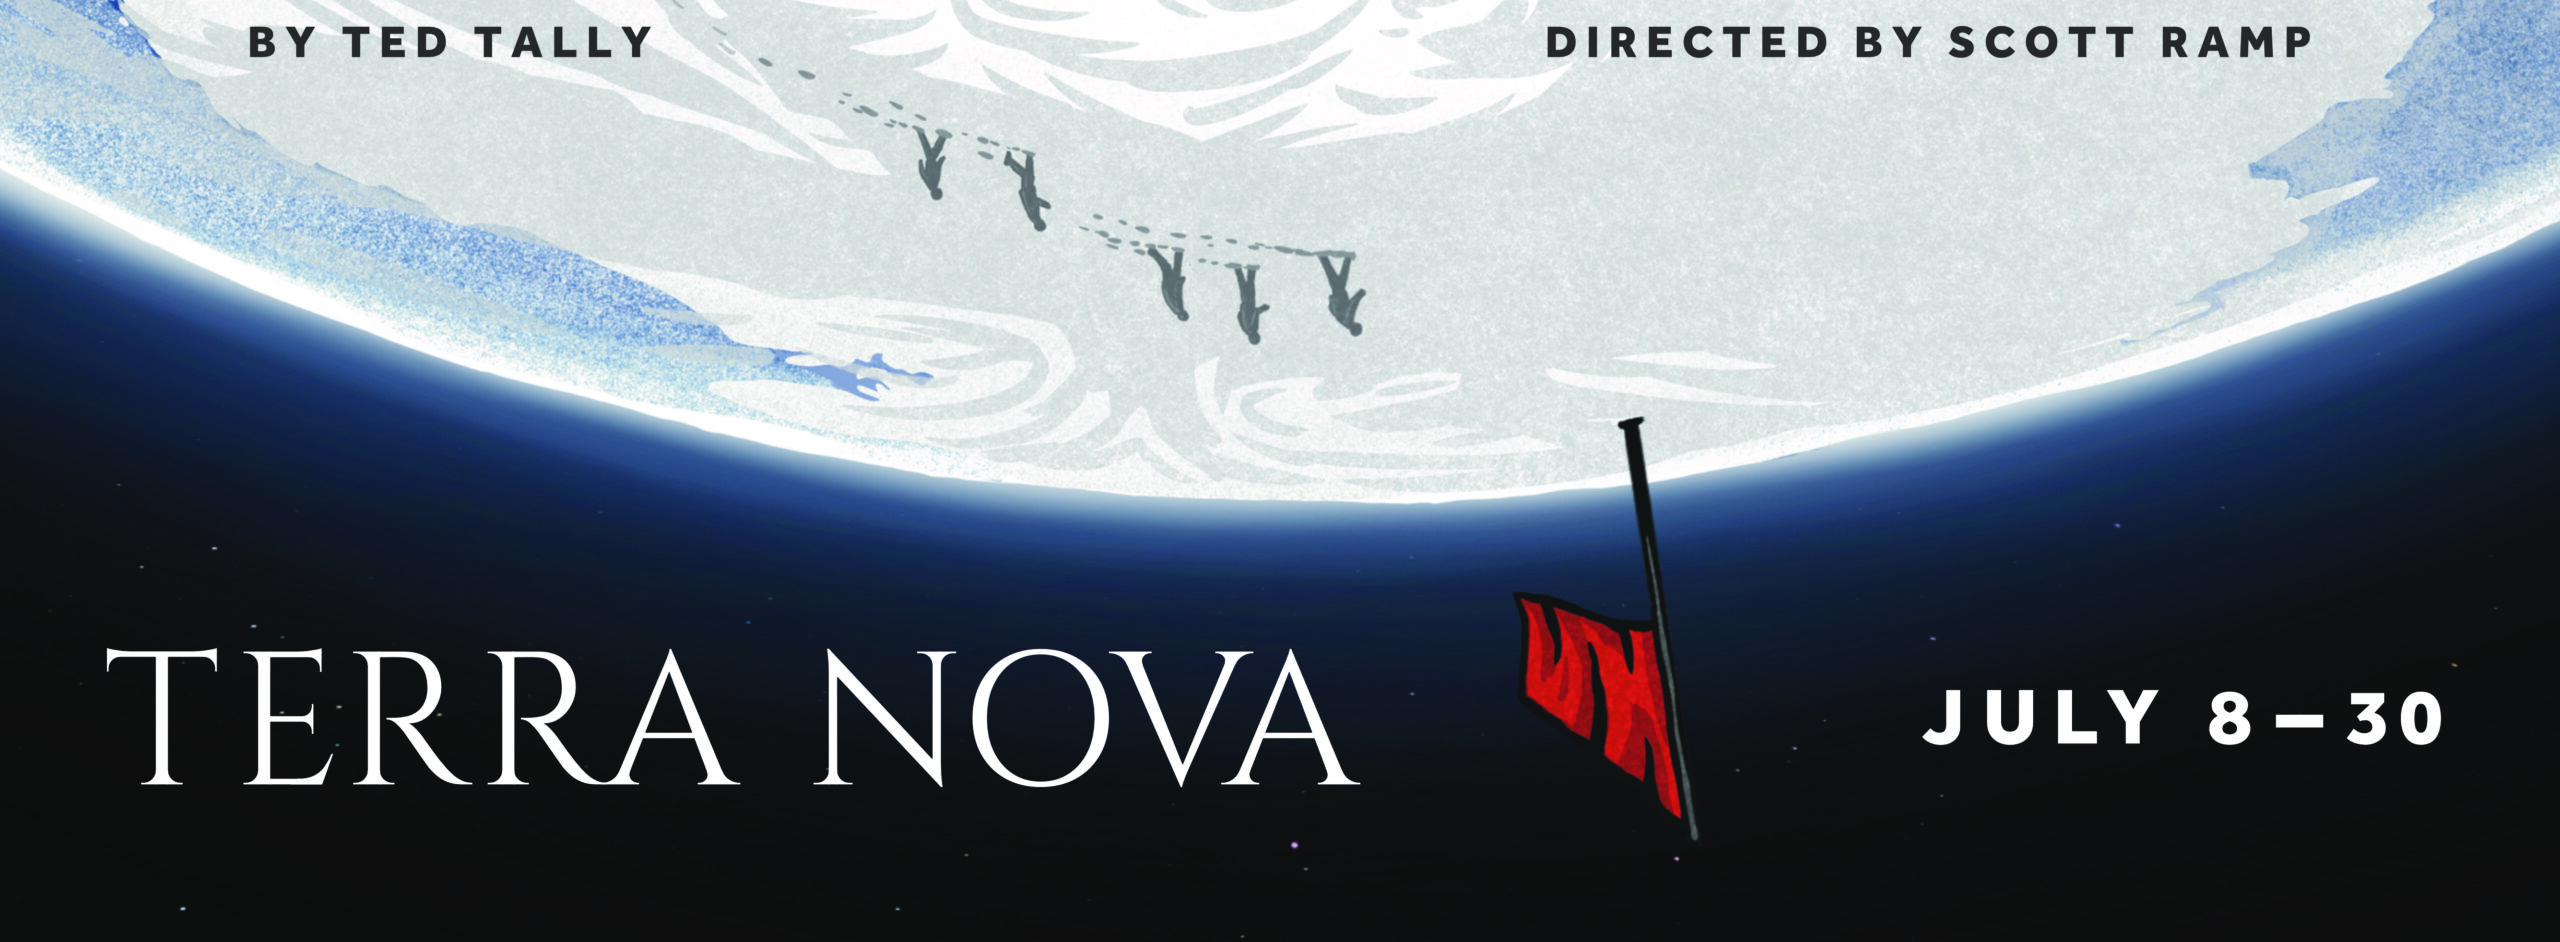 Open auditions for Terra Nova